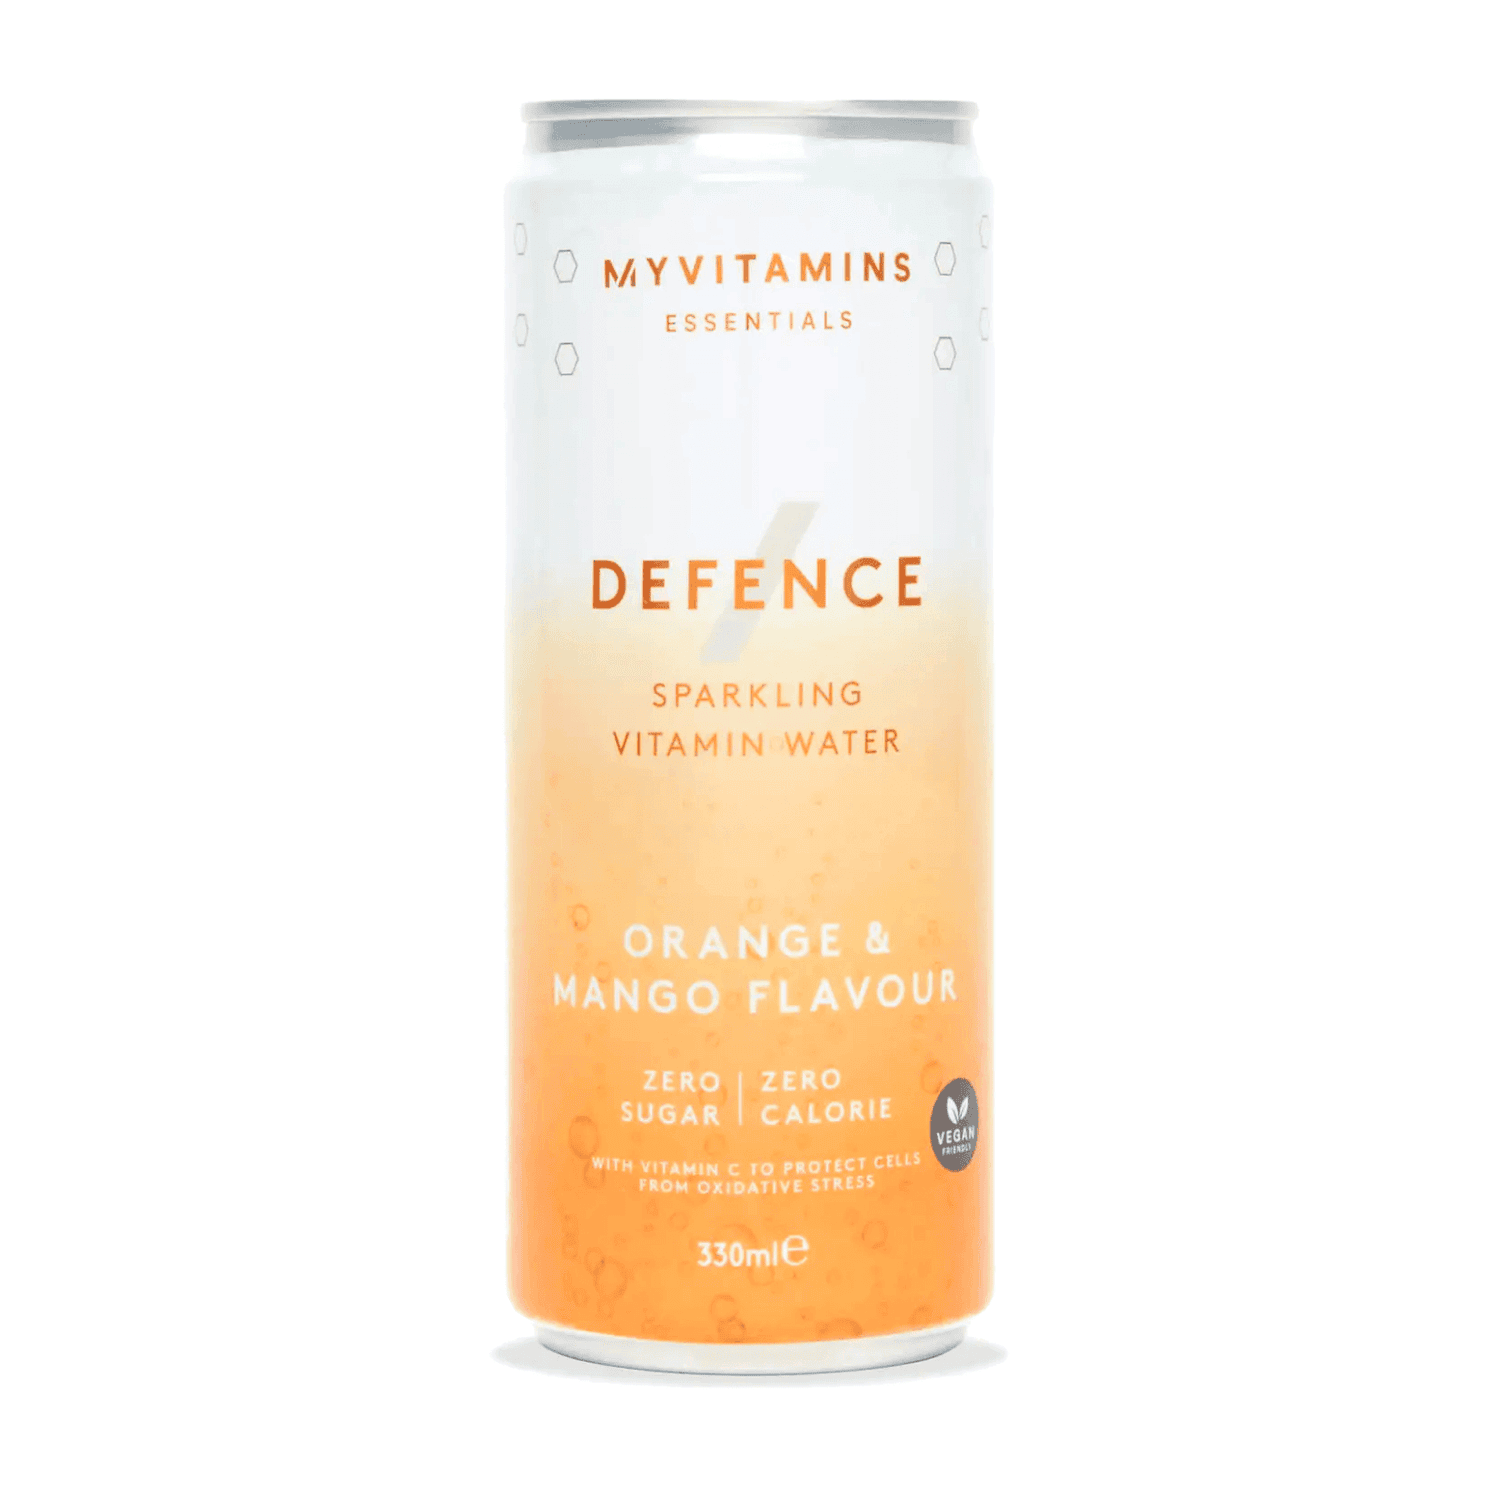 Defence – klar til at drikke - Orange and Mango